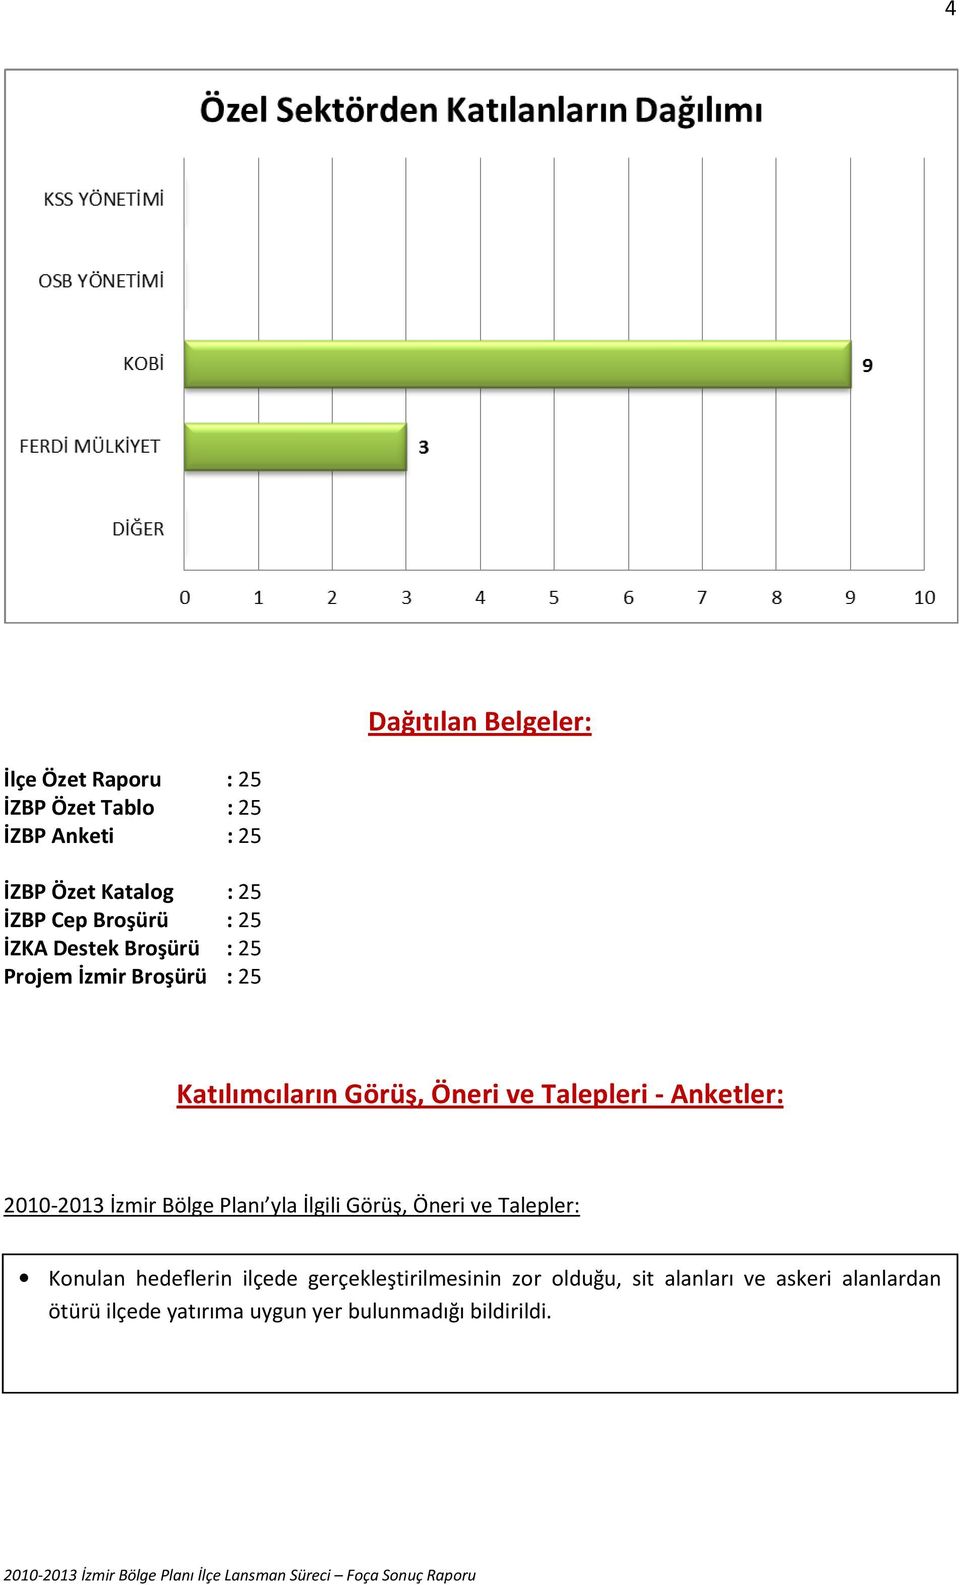 Anketler: 2010-2013 İzmir Bölge Planı yla İlgili Görüş, Öneri ve Talepler: Konulan hedeflerin ilçede